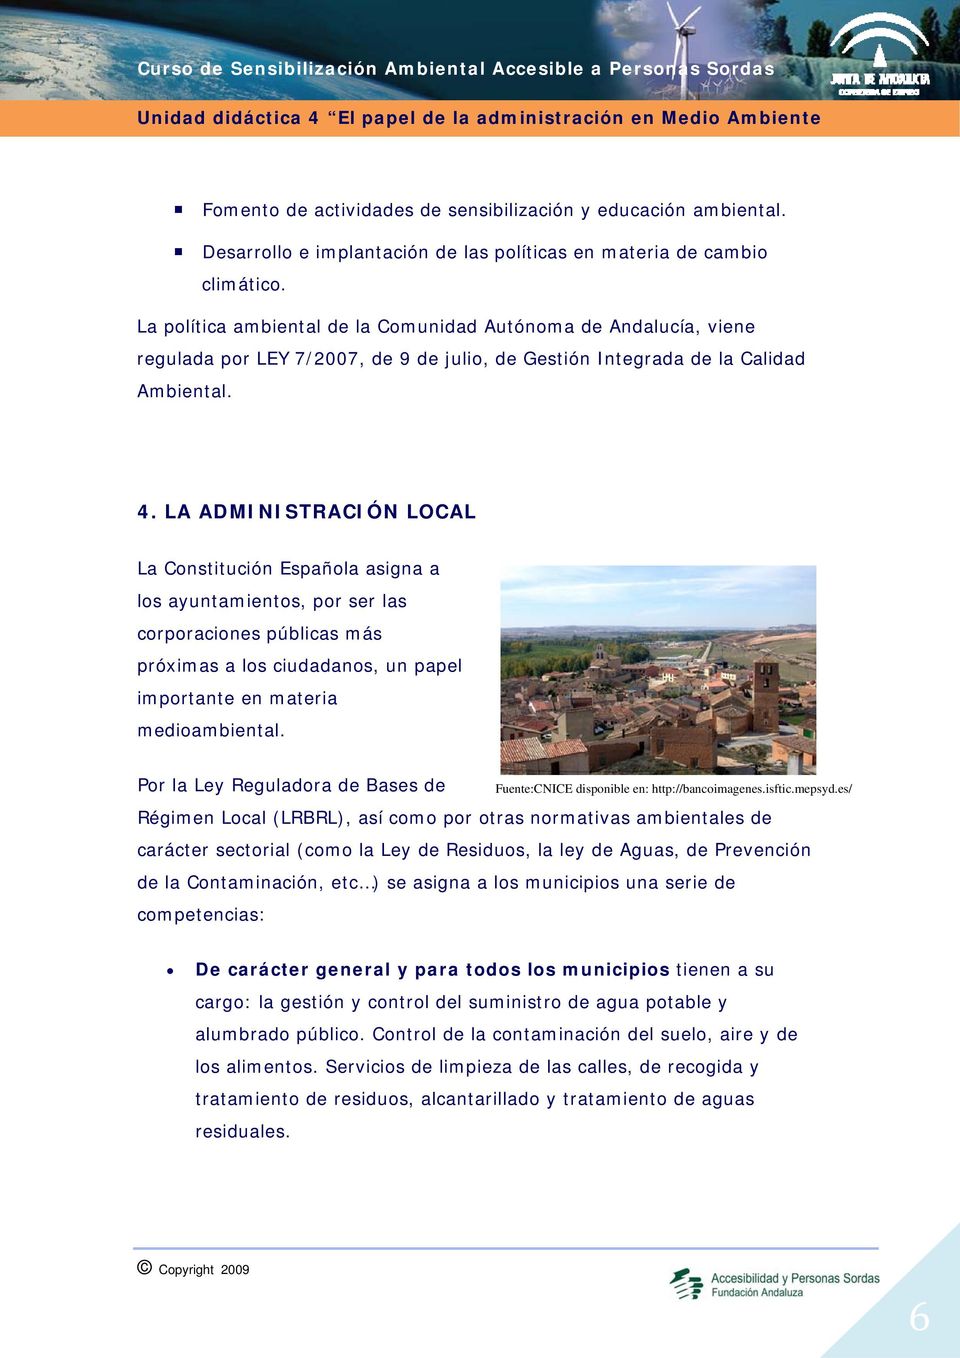 LA ADMINISTRACIÓN LOCAL La Constitución Española asigna a los ayuntamientos, por ser las corporaciones públicas más próximas a los ciudadanos, un papel importante en materia medioambiental.